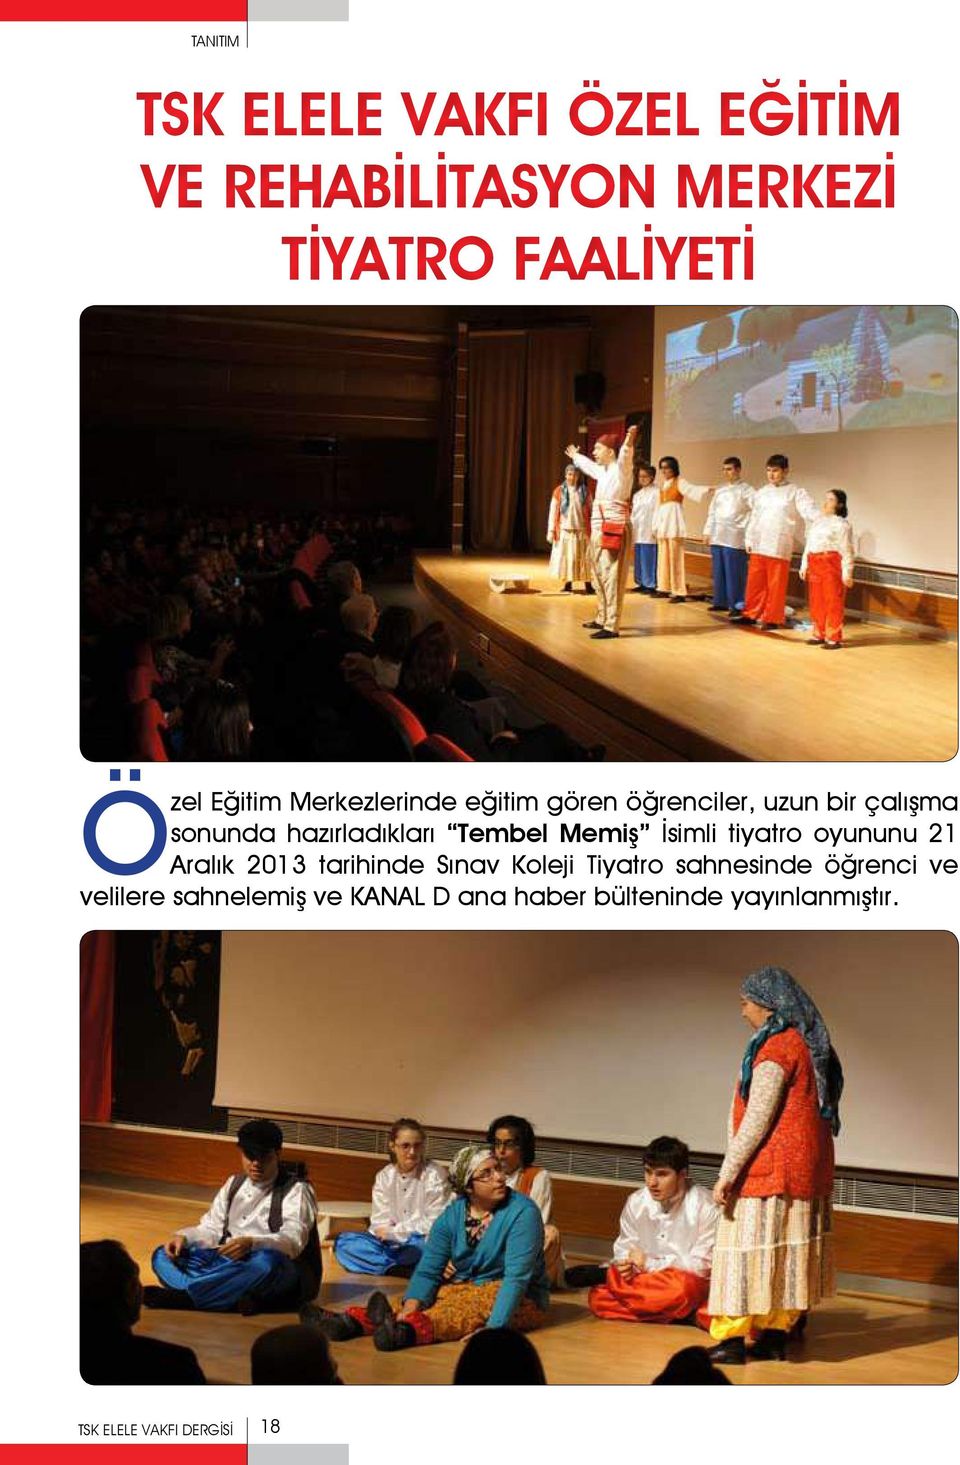 İsimli tiyatro oyununu 21 Aralık 2013 tarihinde Sınav Koleji Tiyatro sahnesinde öğrenci ve